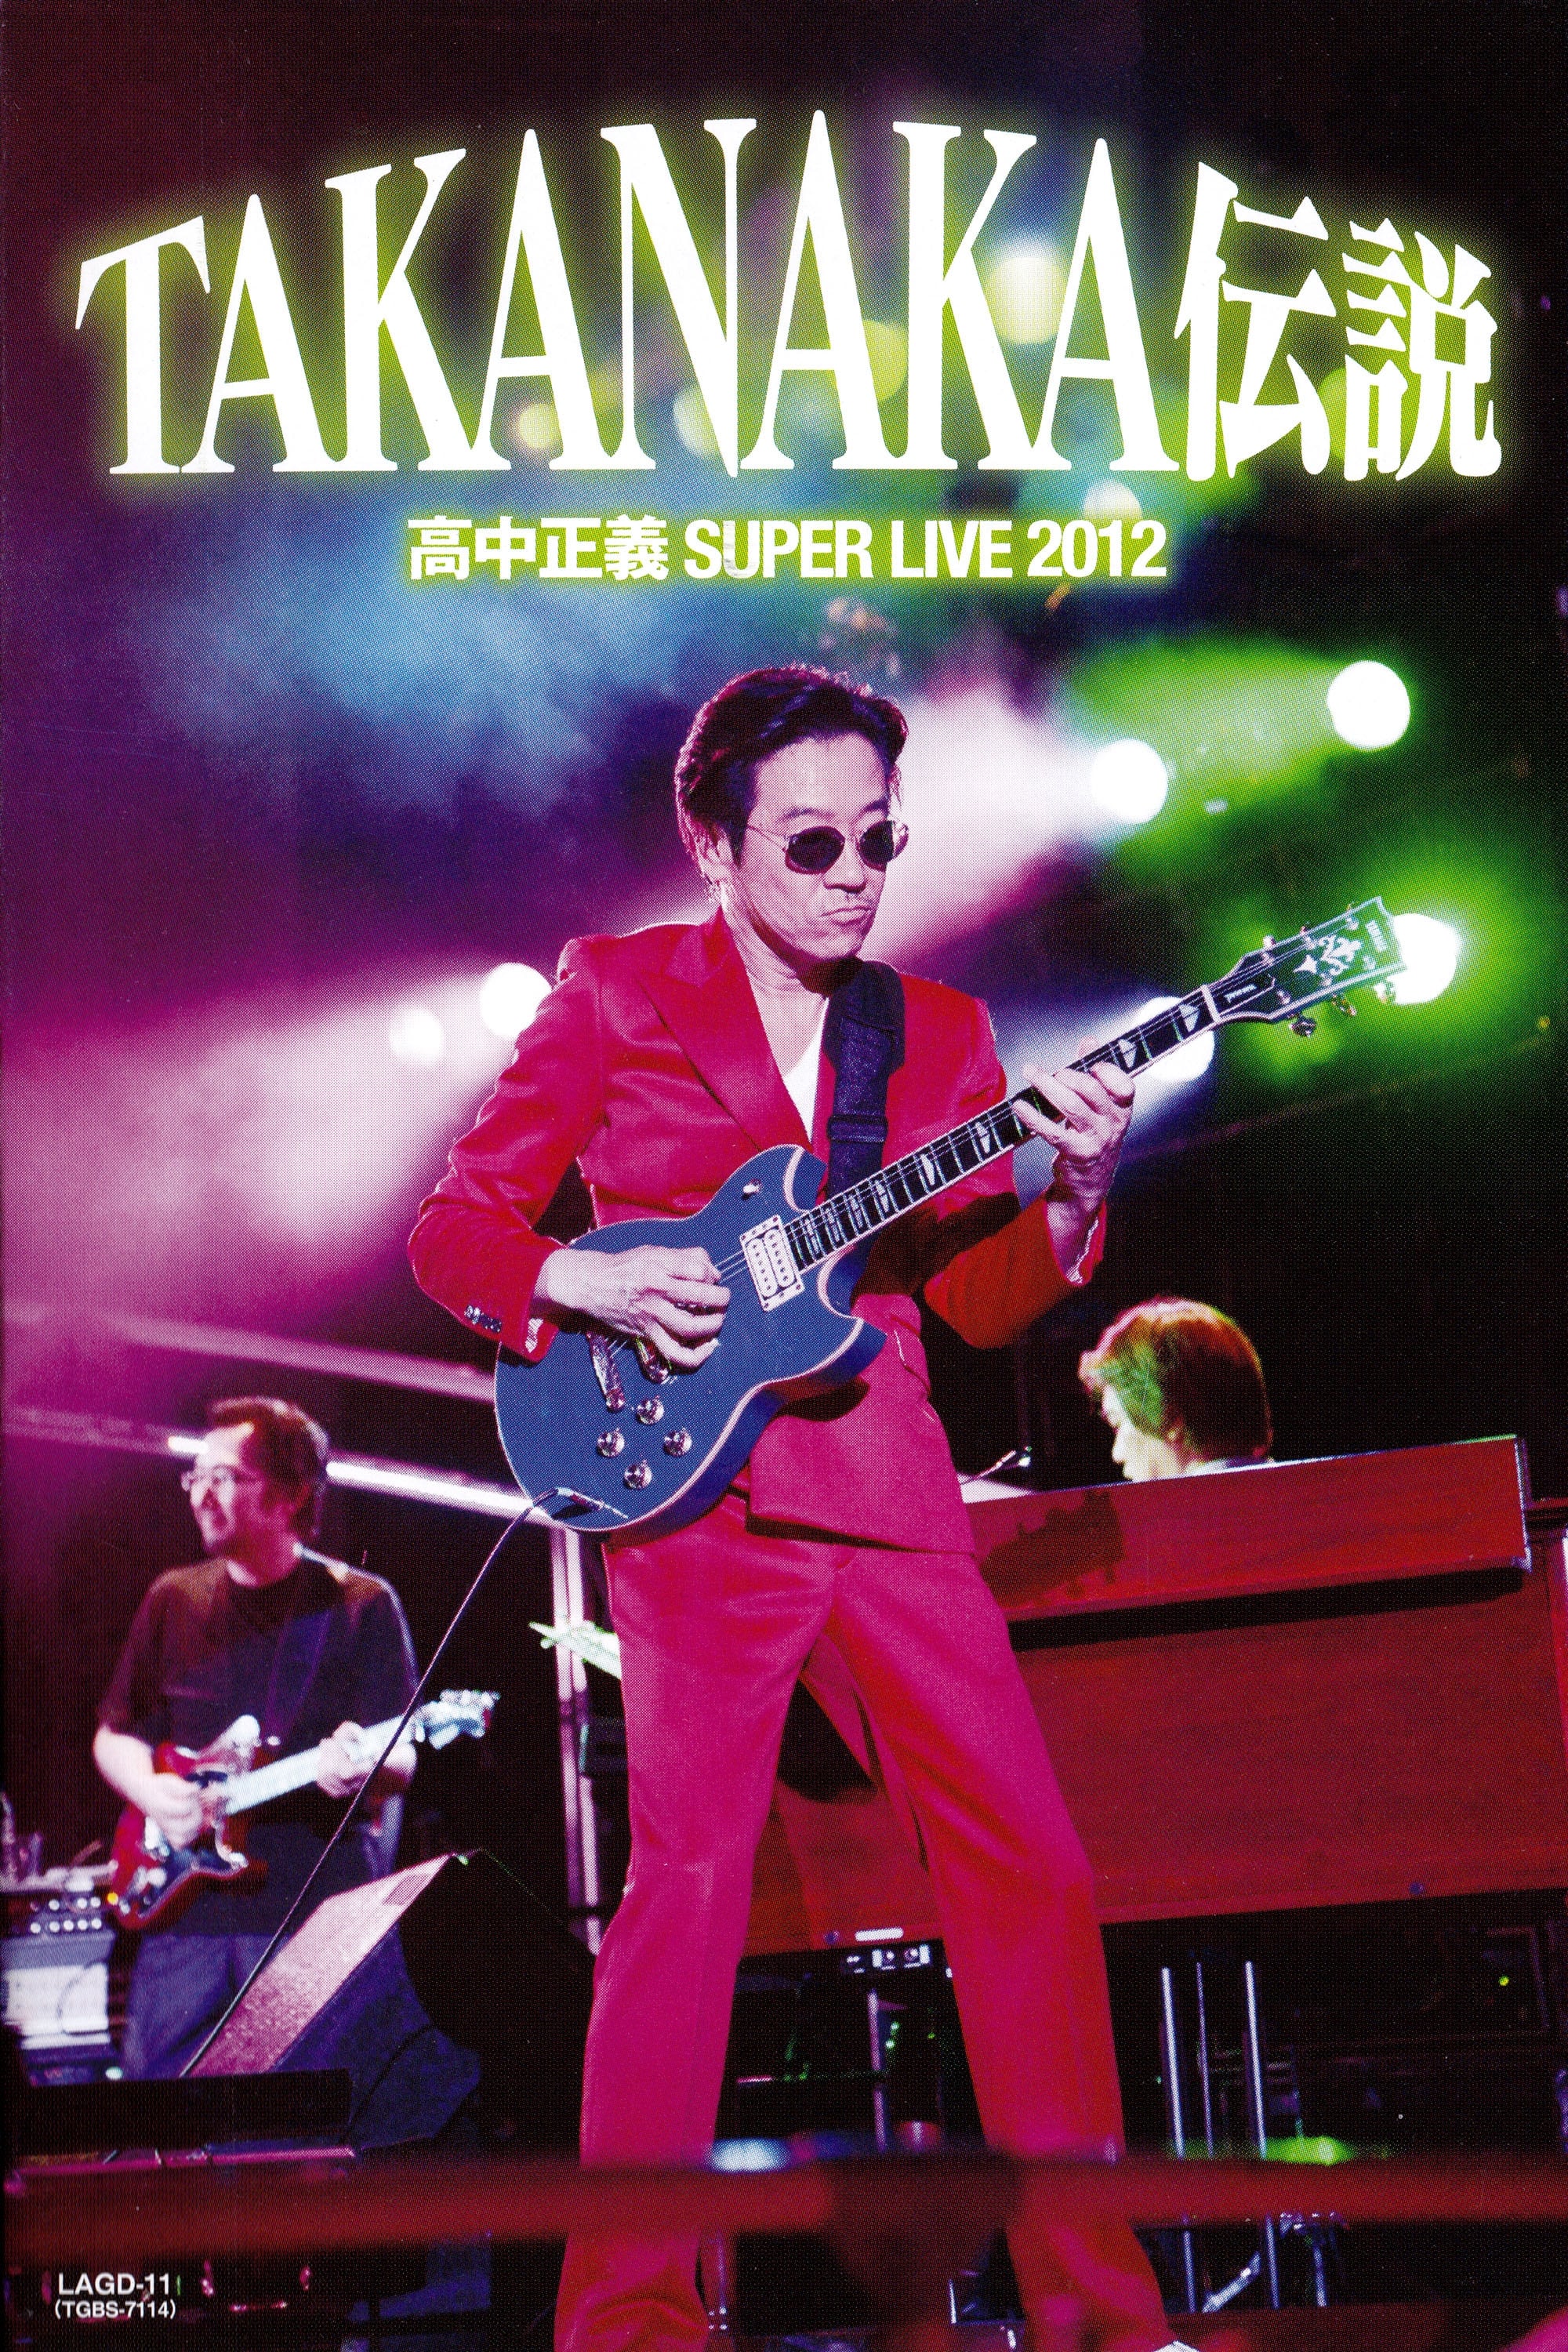 Masayoshi Takanaka - SUPER LIVE 2012 "TAKANAKA Legend"